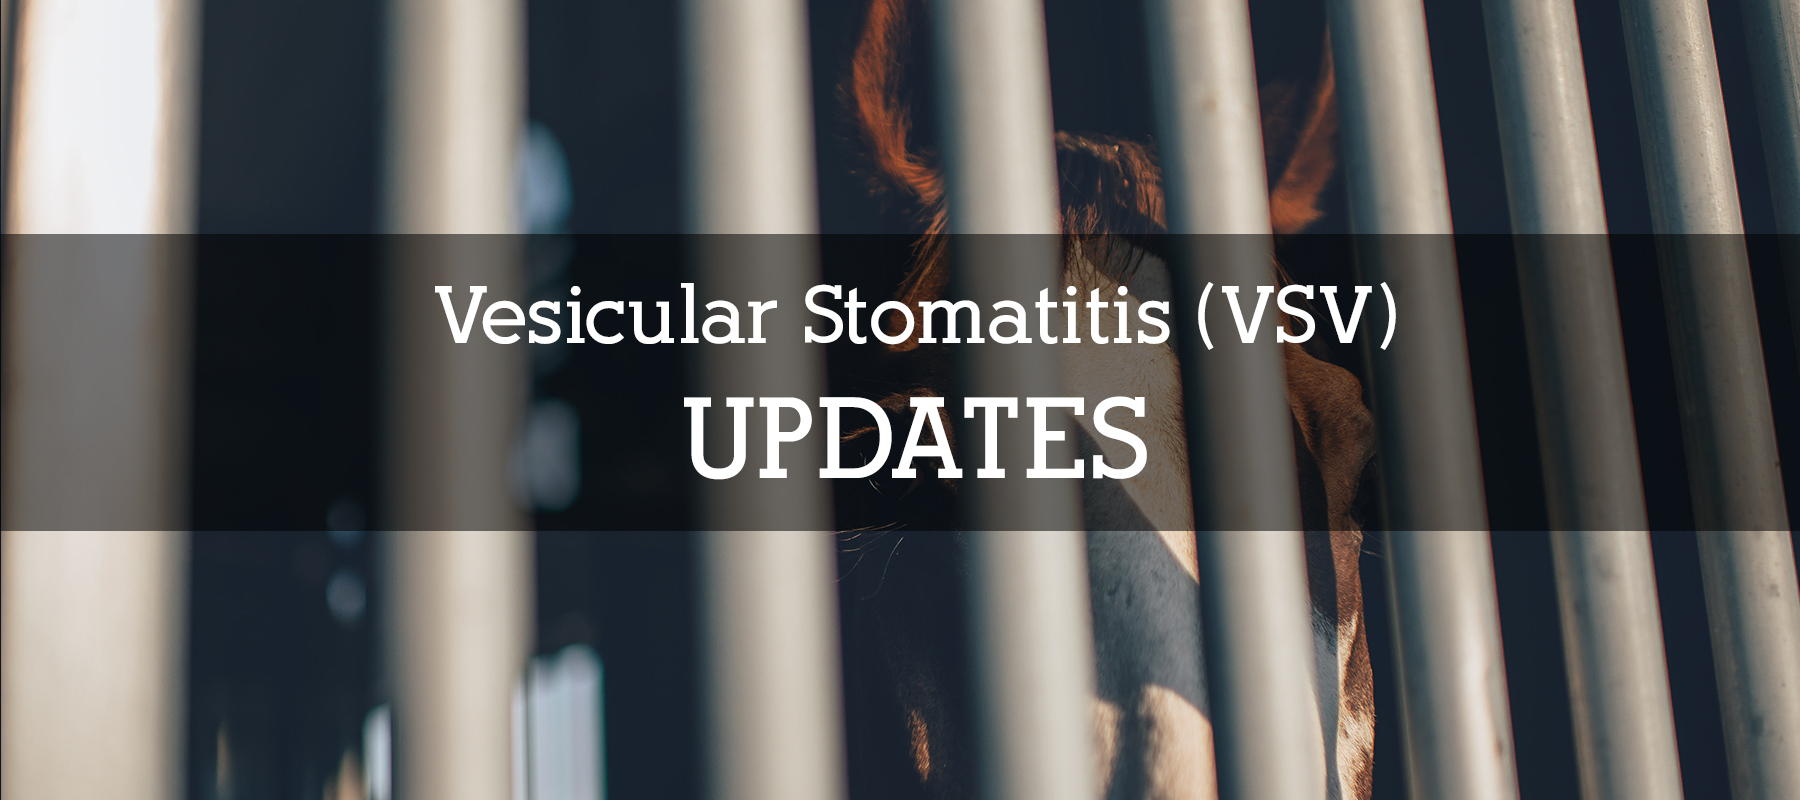 VSV (Vesicular Stomatitis) Confirmed in Colorado